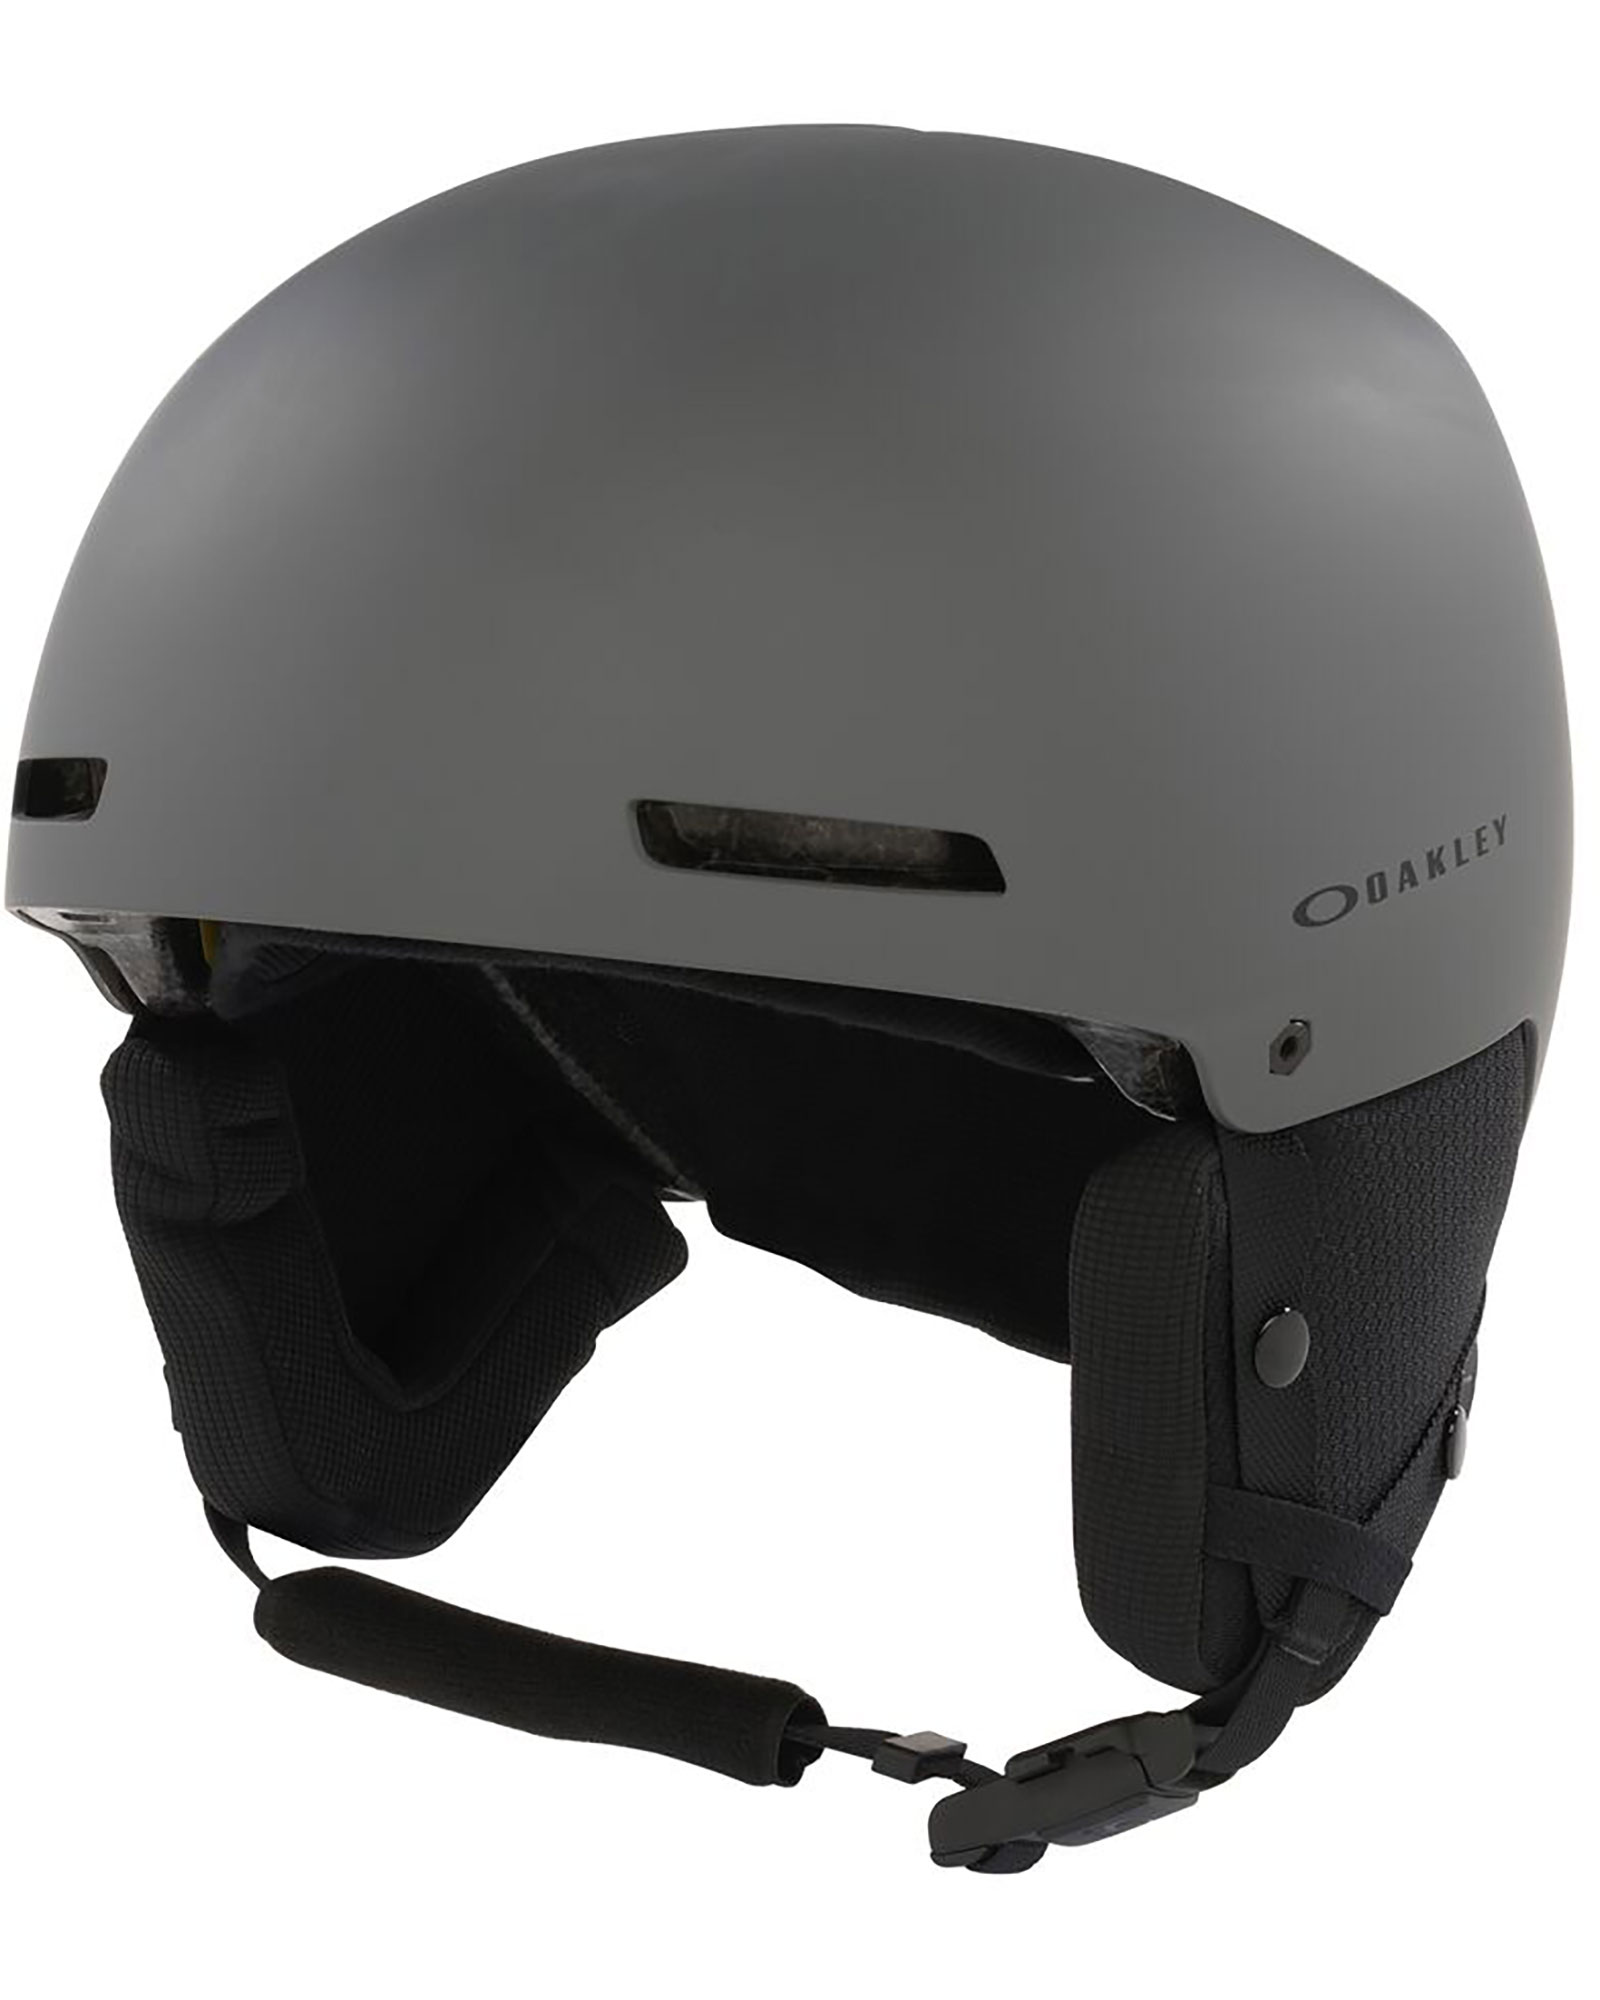 Oakley MOD1 Pro Helmet - Forged Iron S